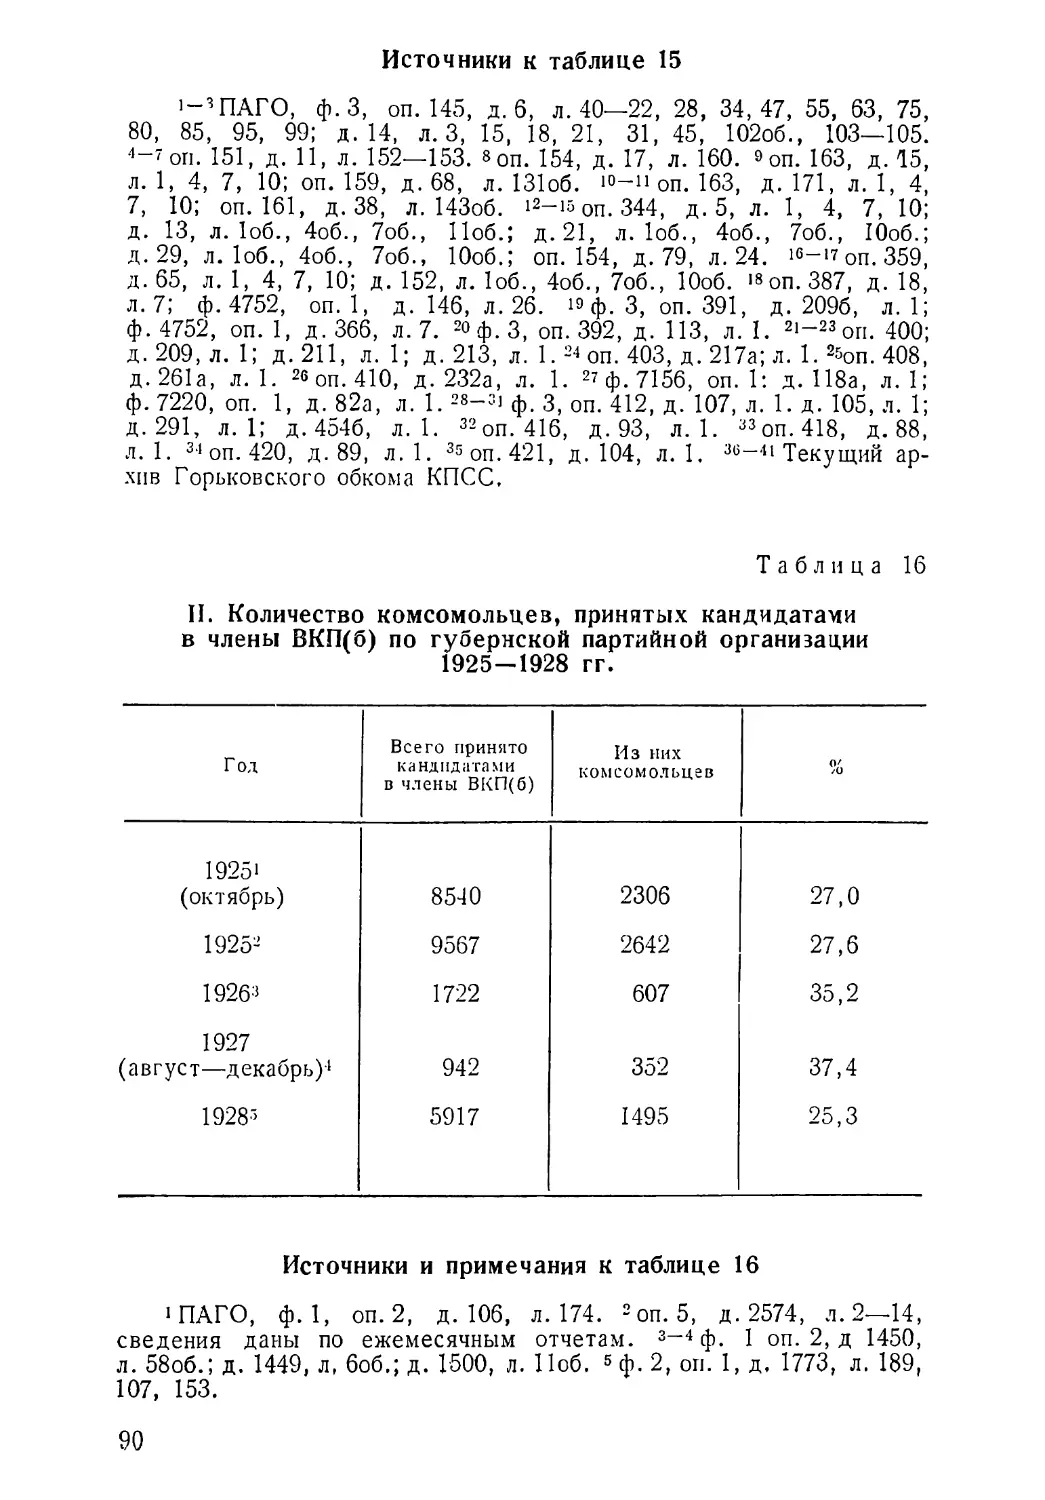 Количество комсомольцев, принятых кандидатами в члены КПСС 1925—1928 гг. Таблица 16